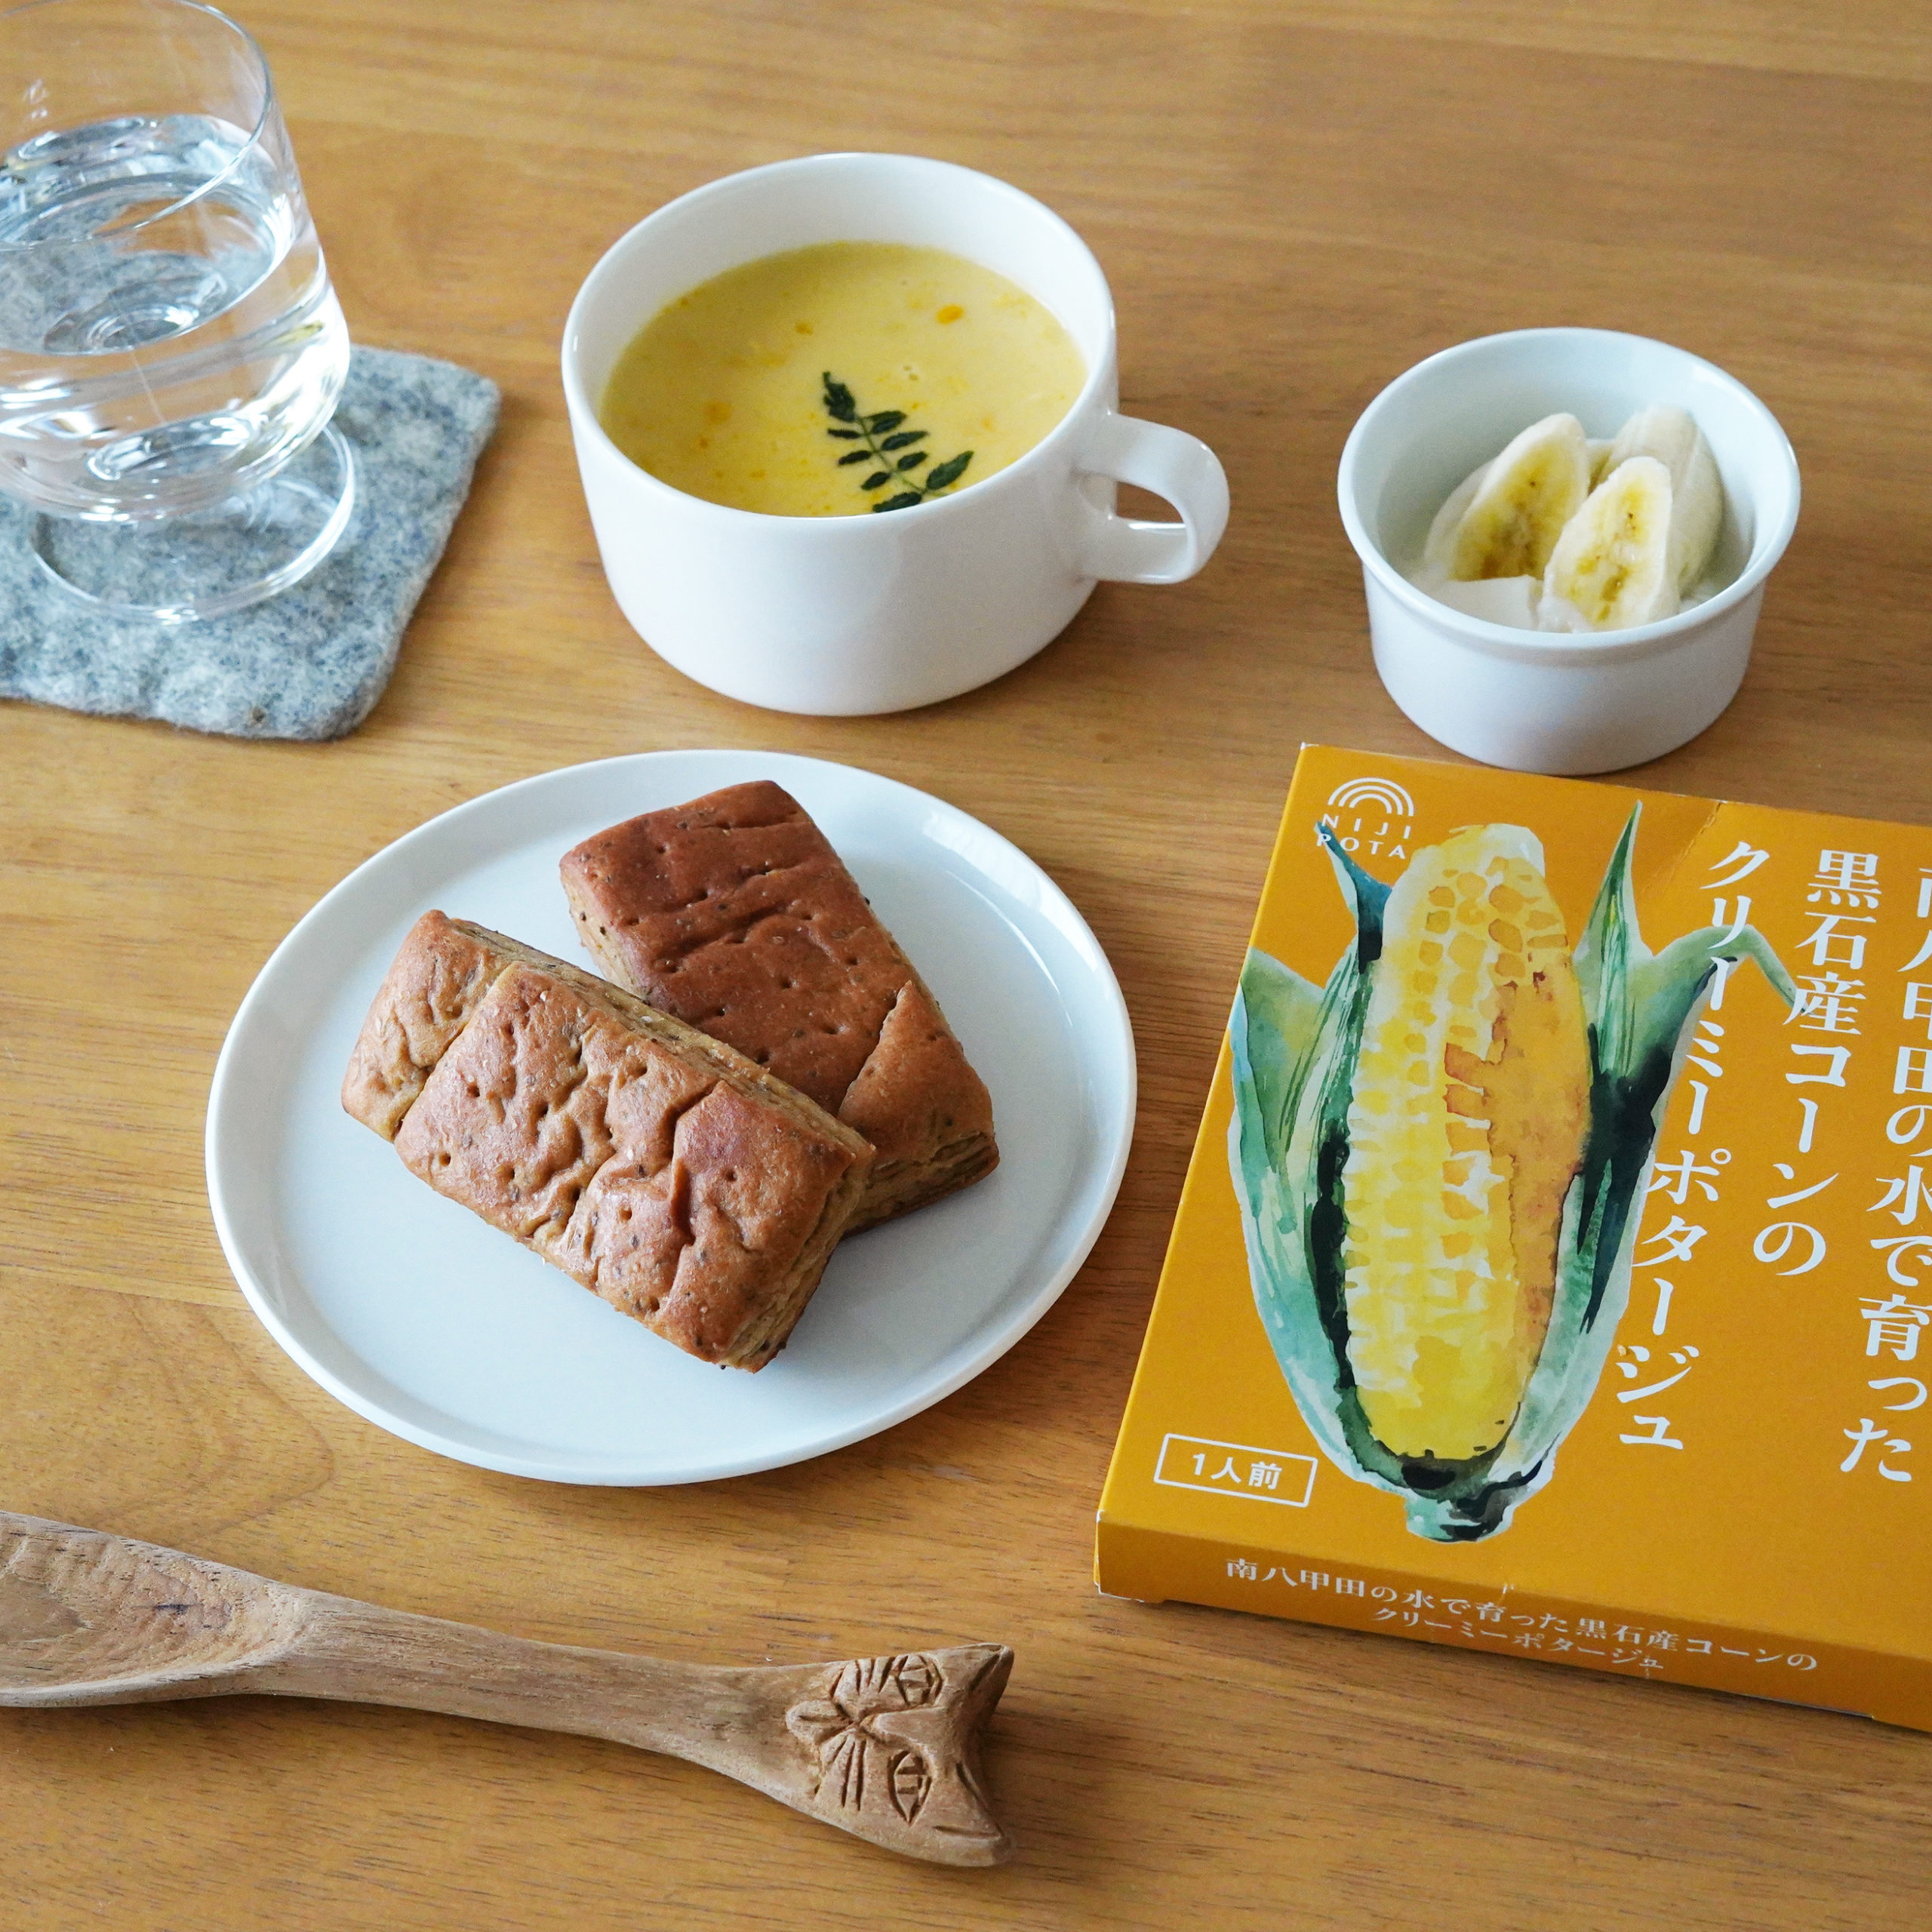 黄色の朝ごパン（BASE BREADのメープル味）と青森のコーンスープ・バナナヨーグルト